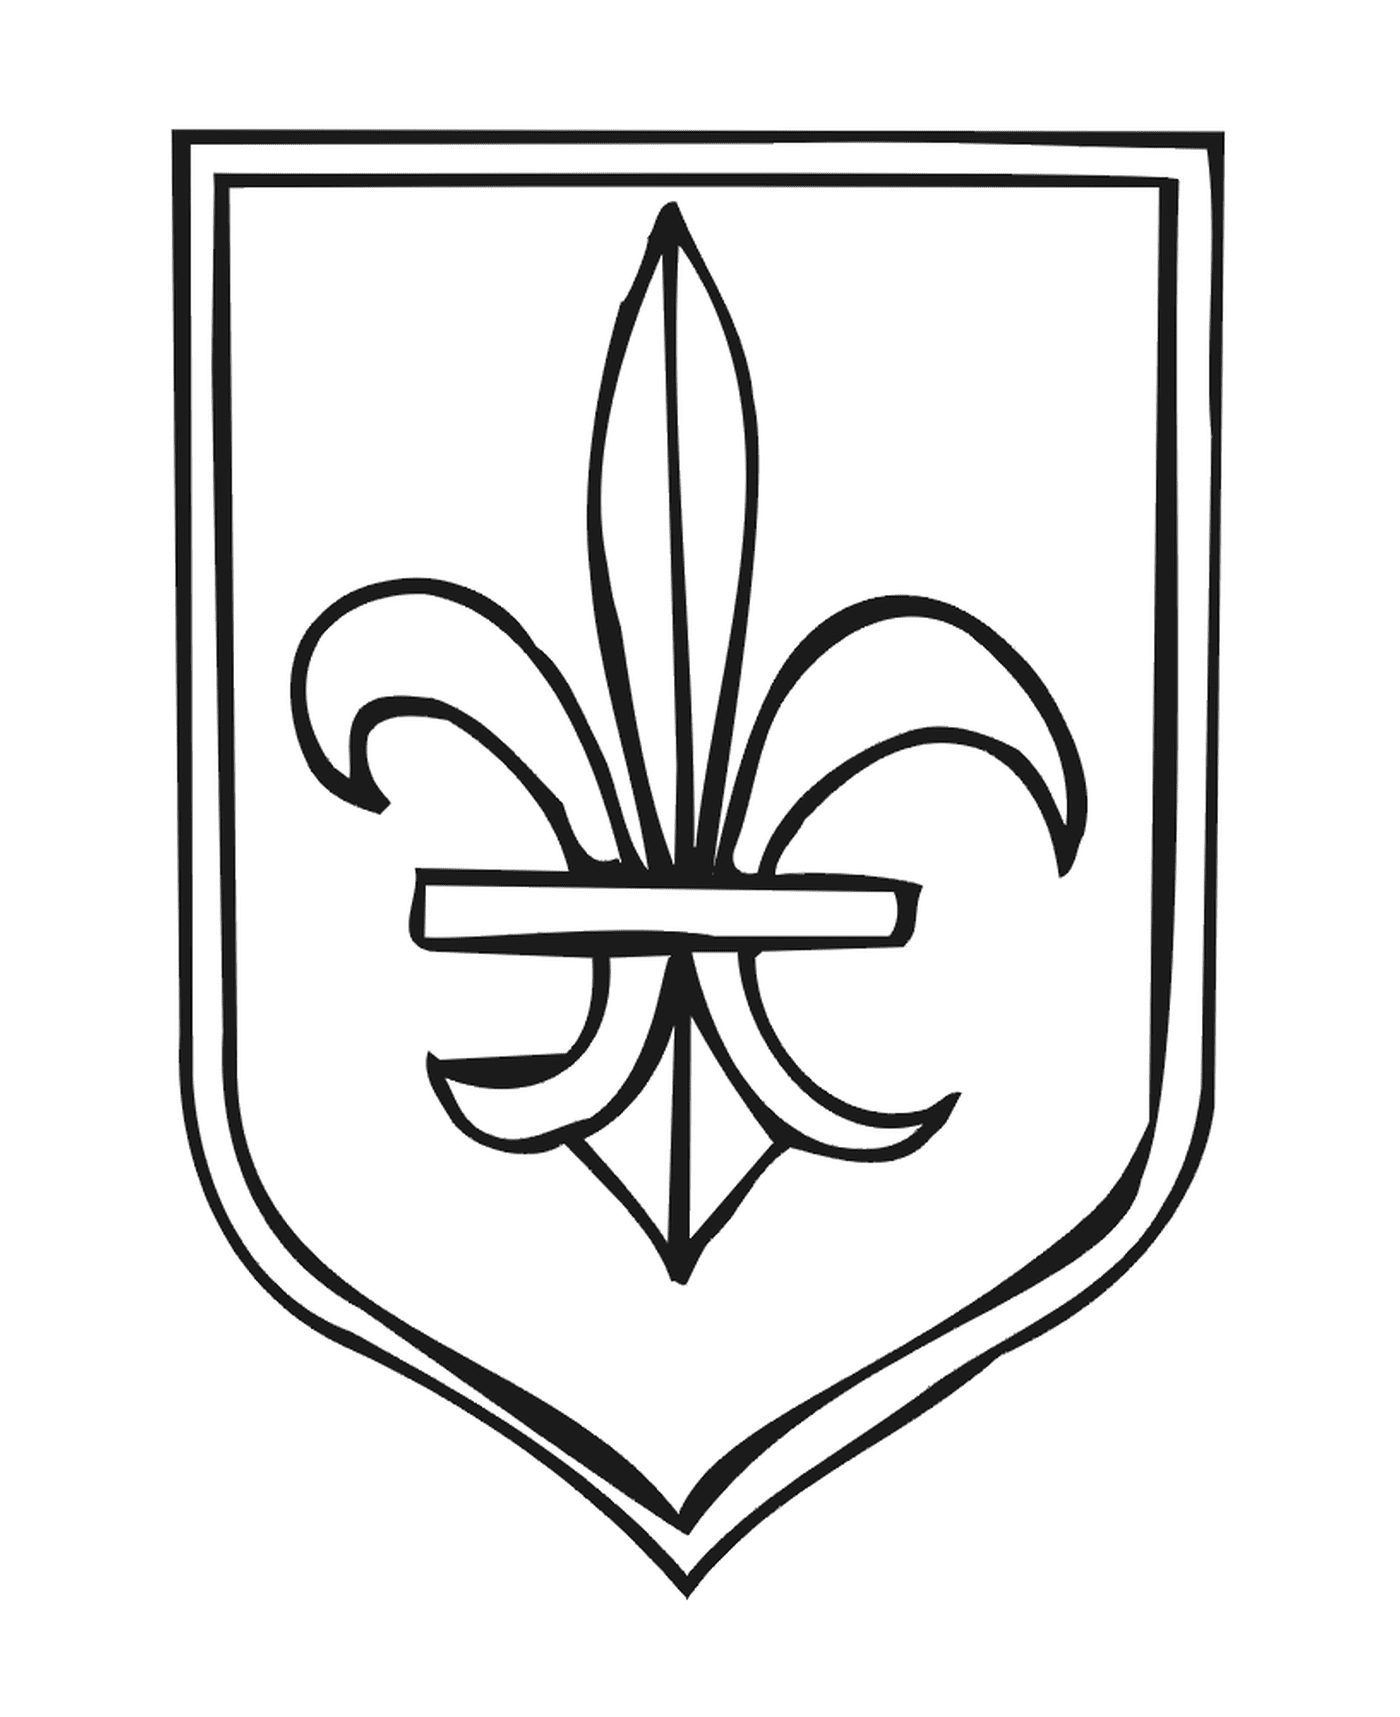  A coat of arms with a fleur de lys 